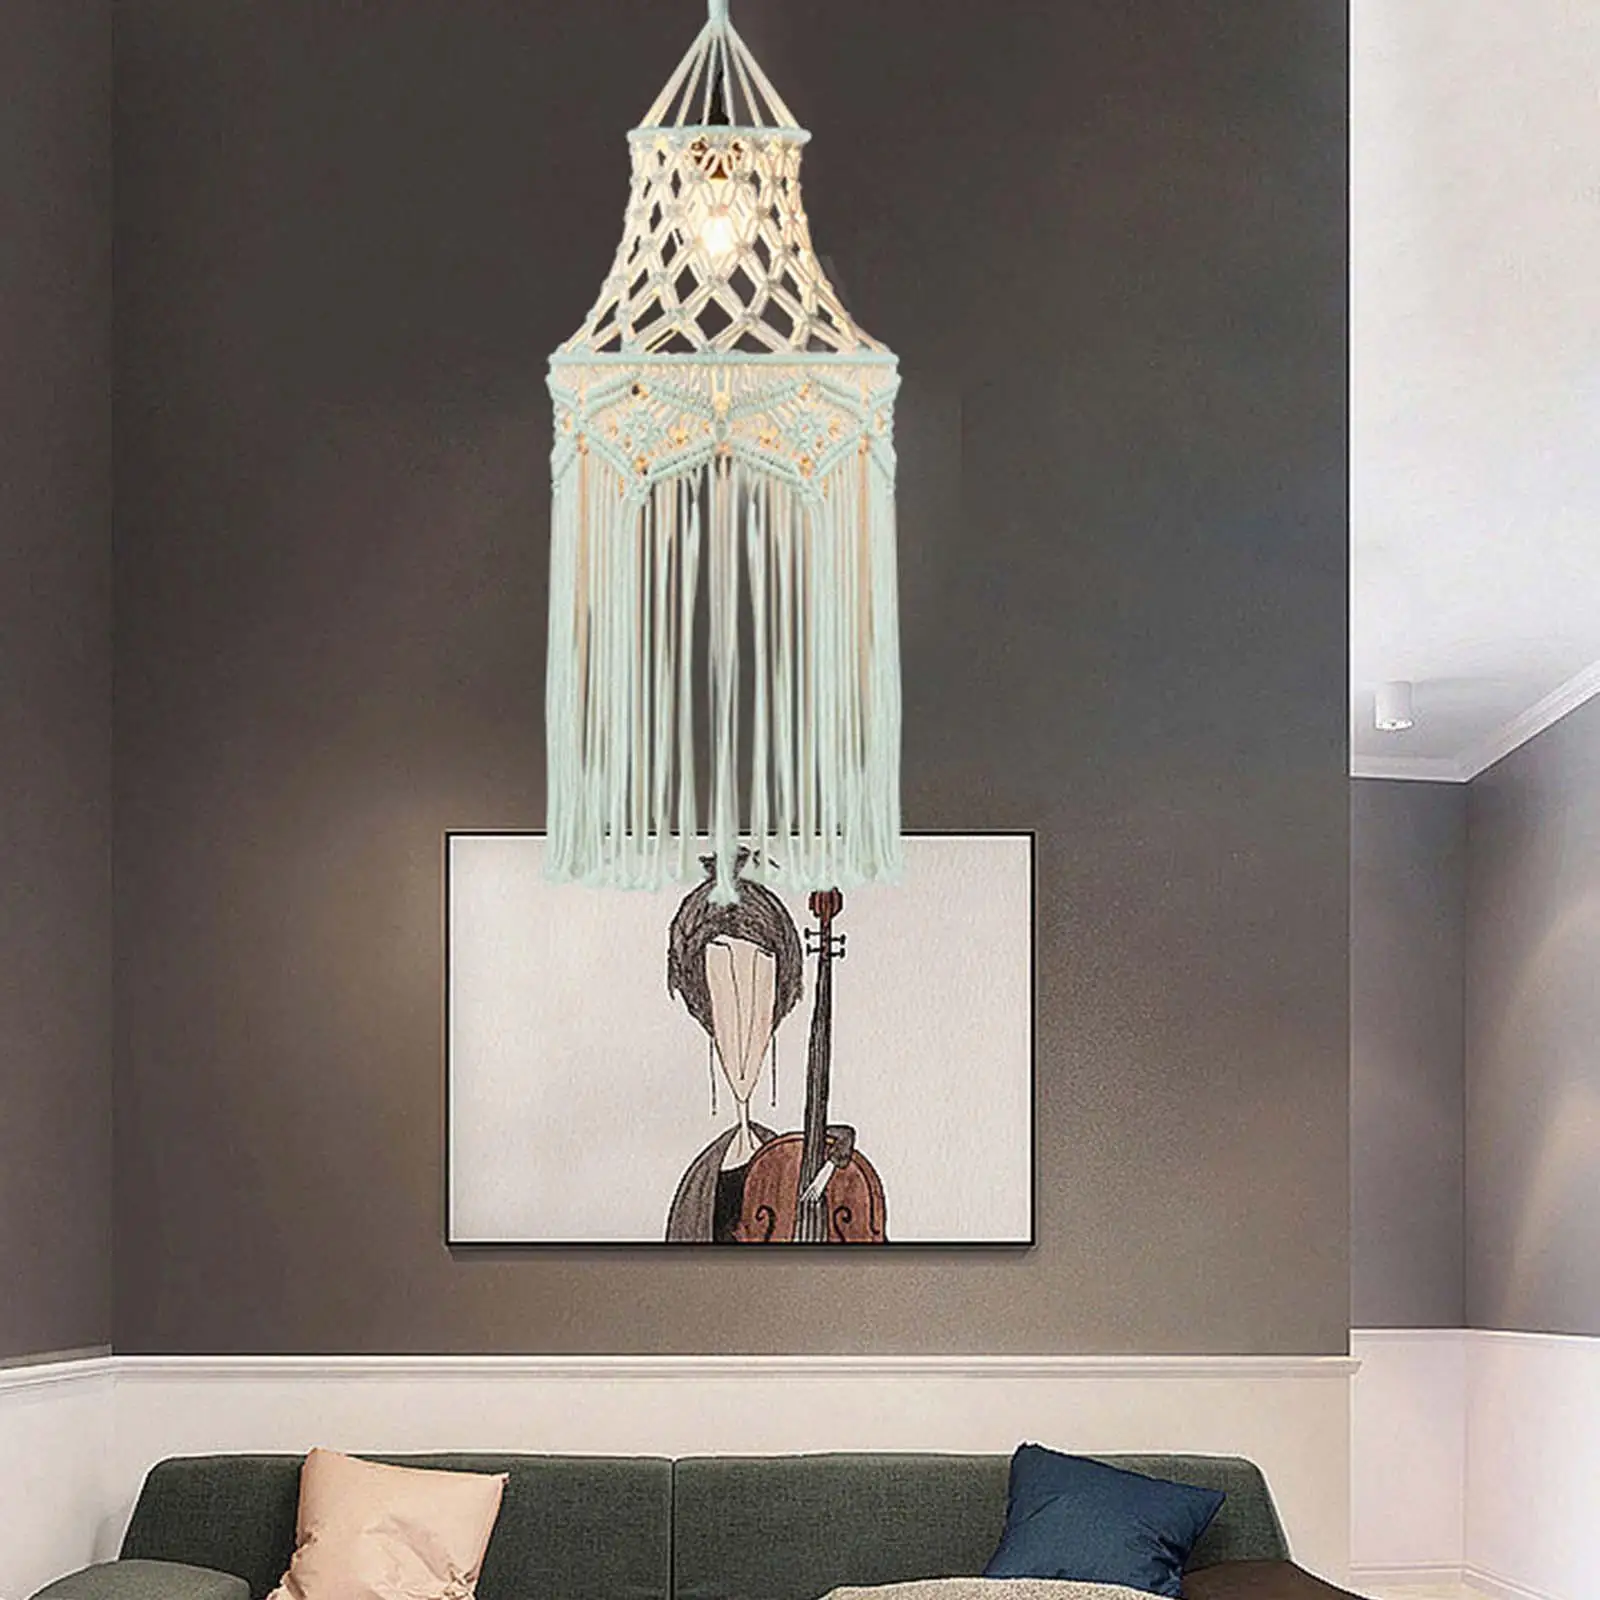 Macrame Tassel Lamp Shade Boho Handmade Pendant Light Cover for Hotel Decoration